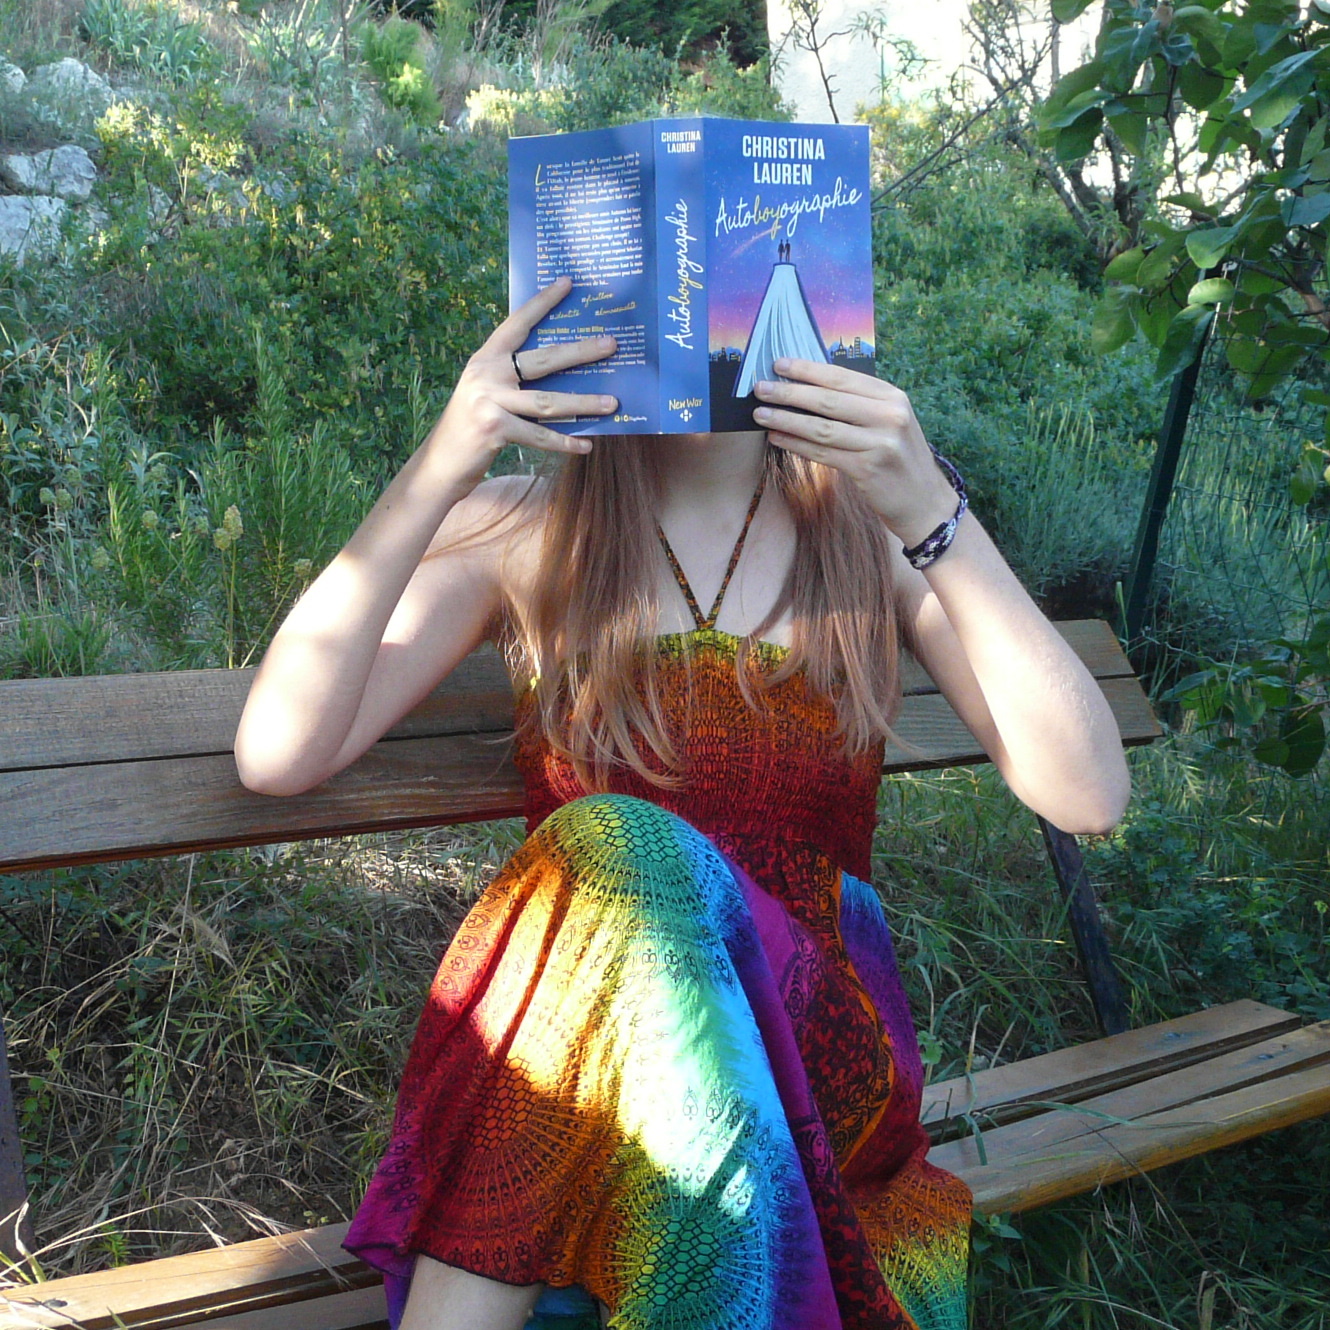 personne en robe multicolore flashy lisant Autoboyographie de Christina Lauren assise sur un banc